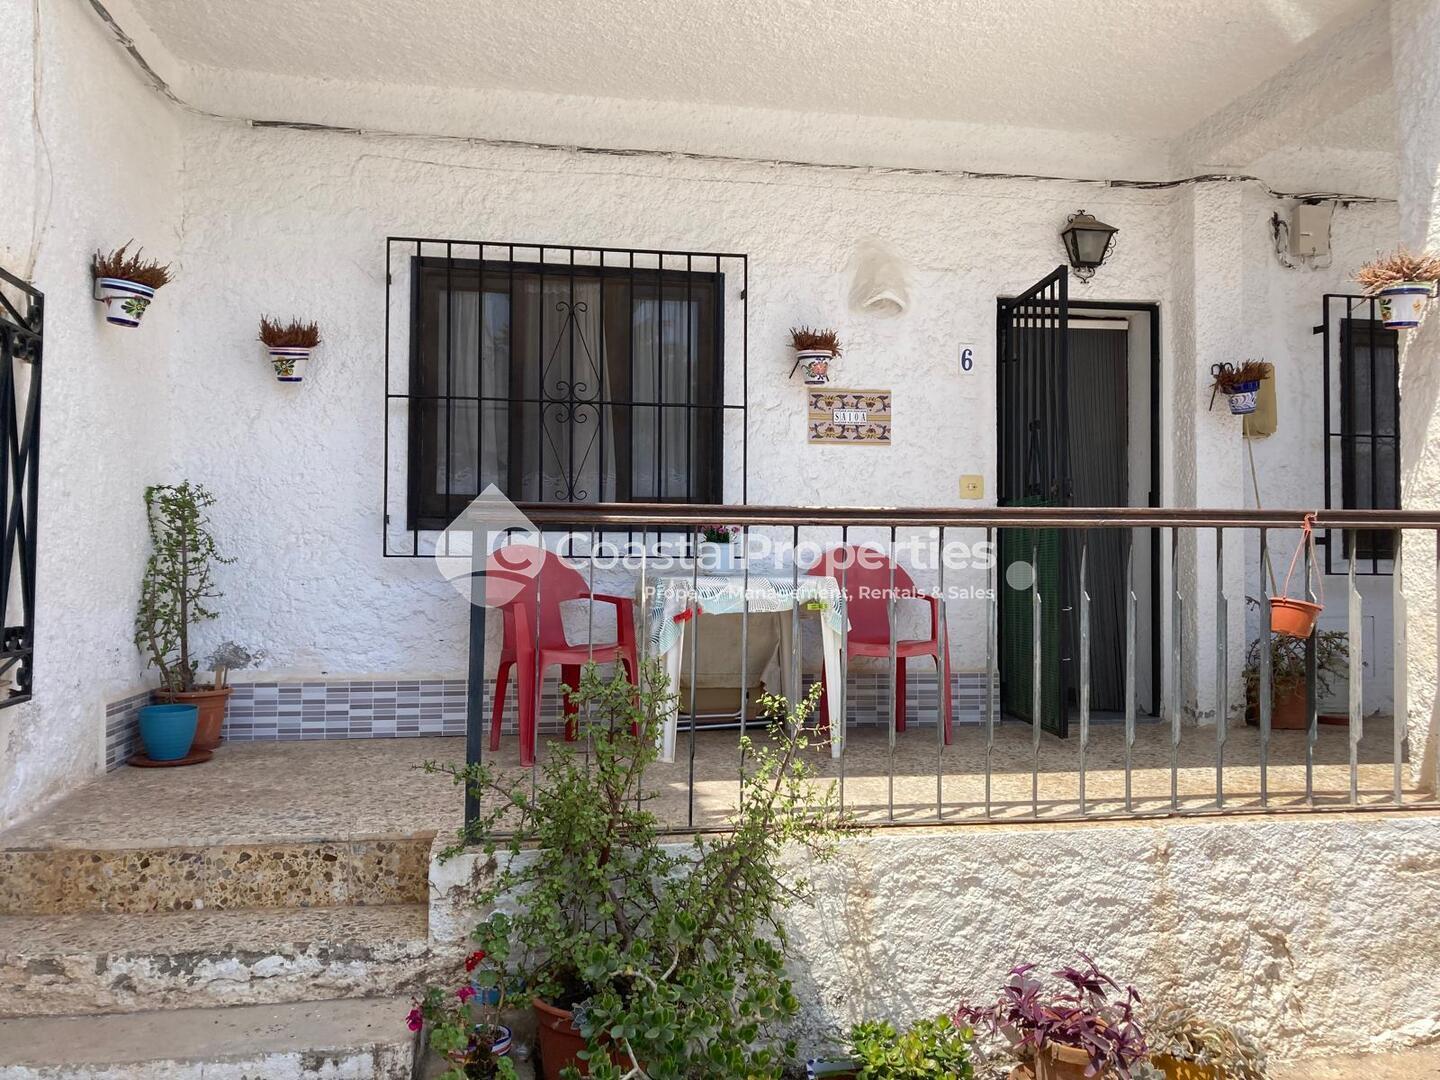 CPM 021- CASA SAIOA: Apartment in Mojácar, Almería